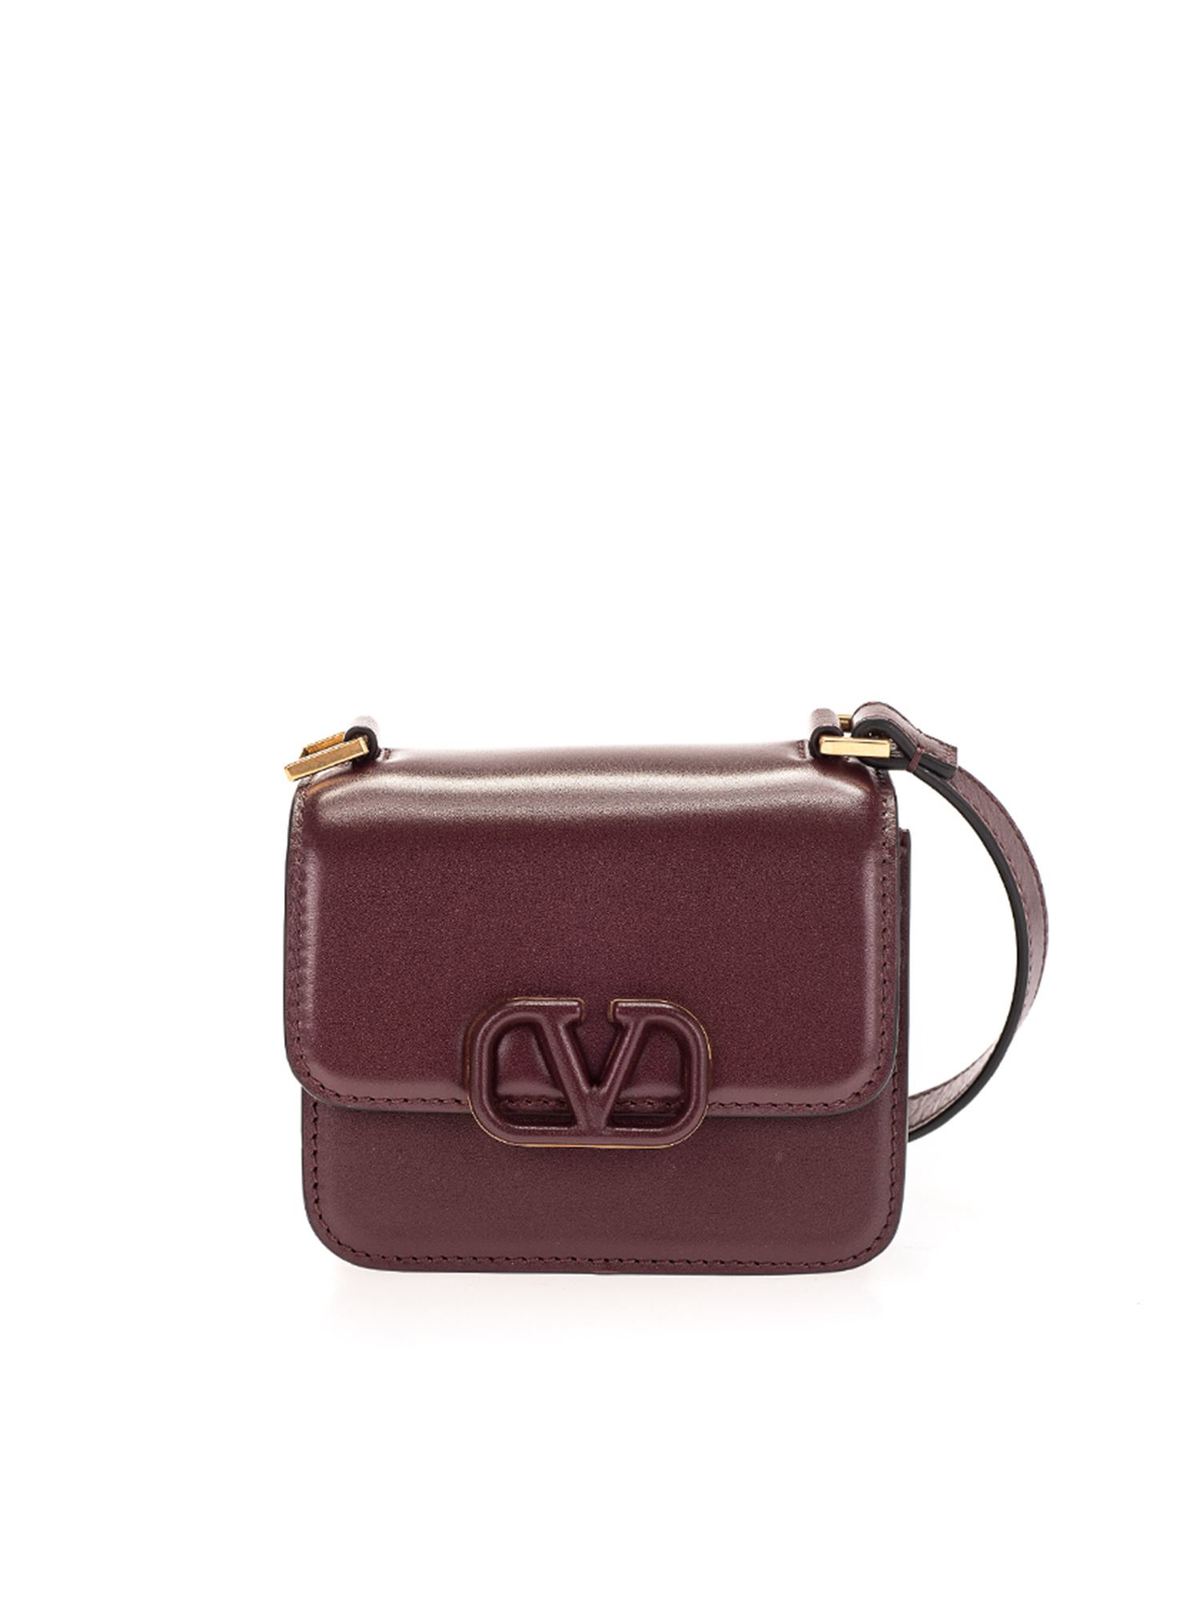 Valentino VSLING Medium Leather Shoulder Bag Burgundy